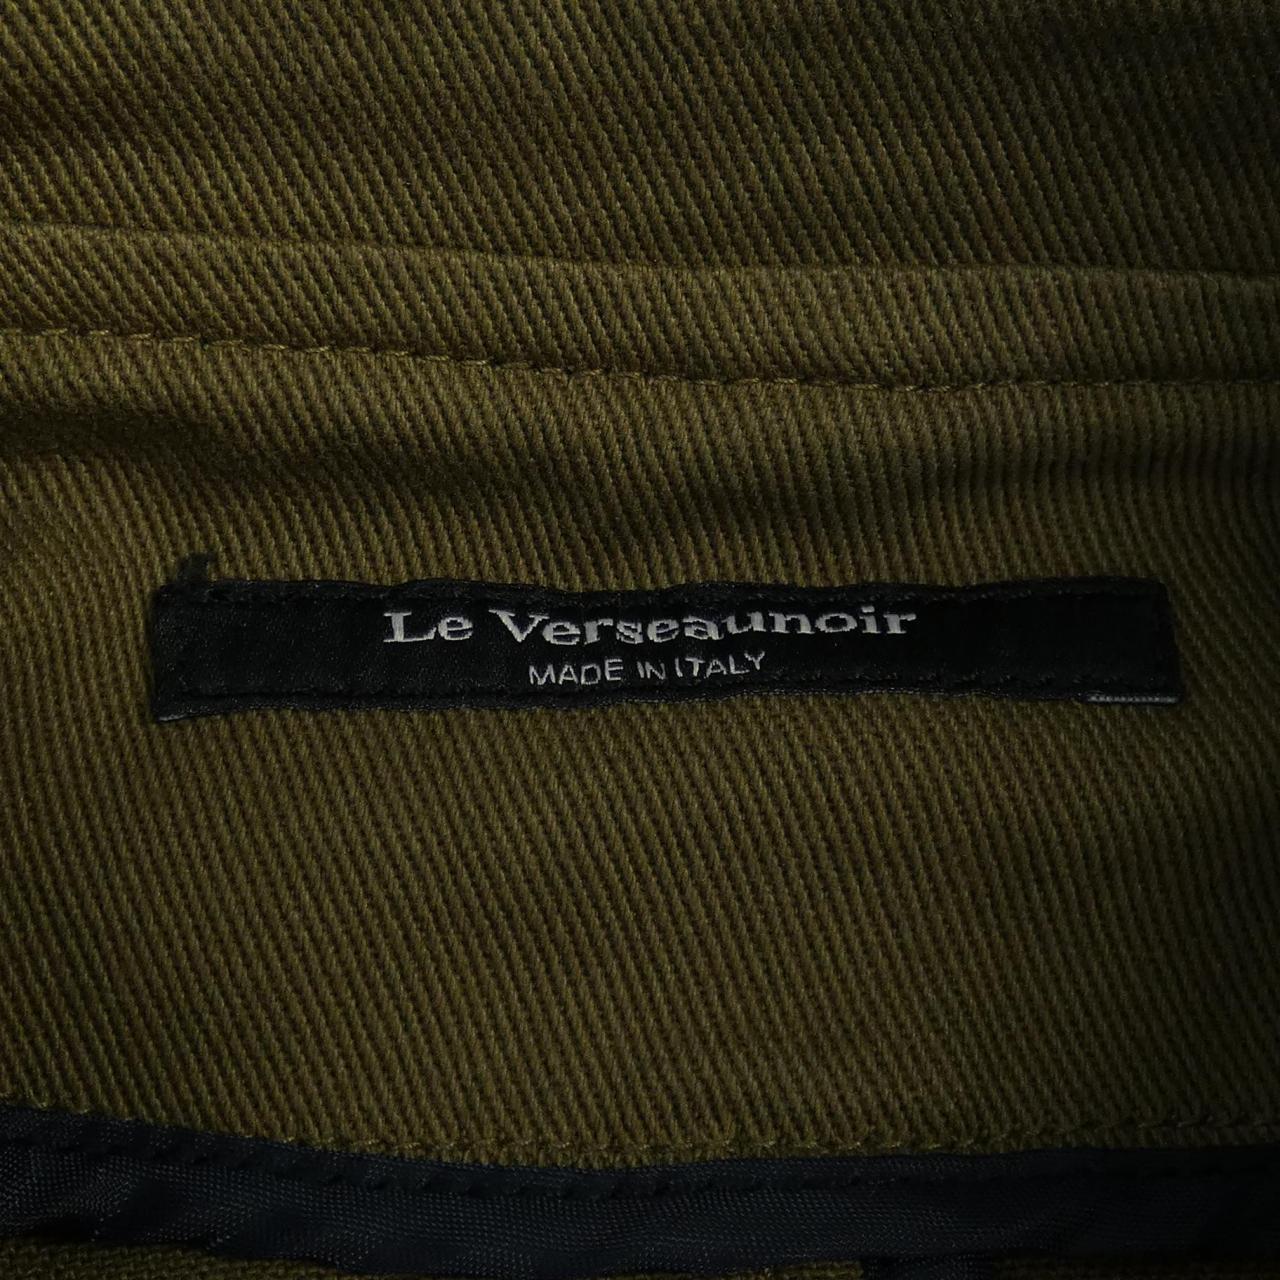 ルベルソーノアール Le Verseau noir ジャケット